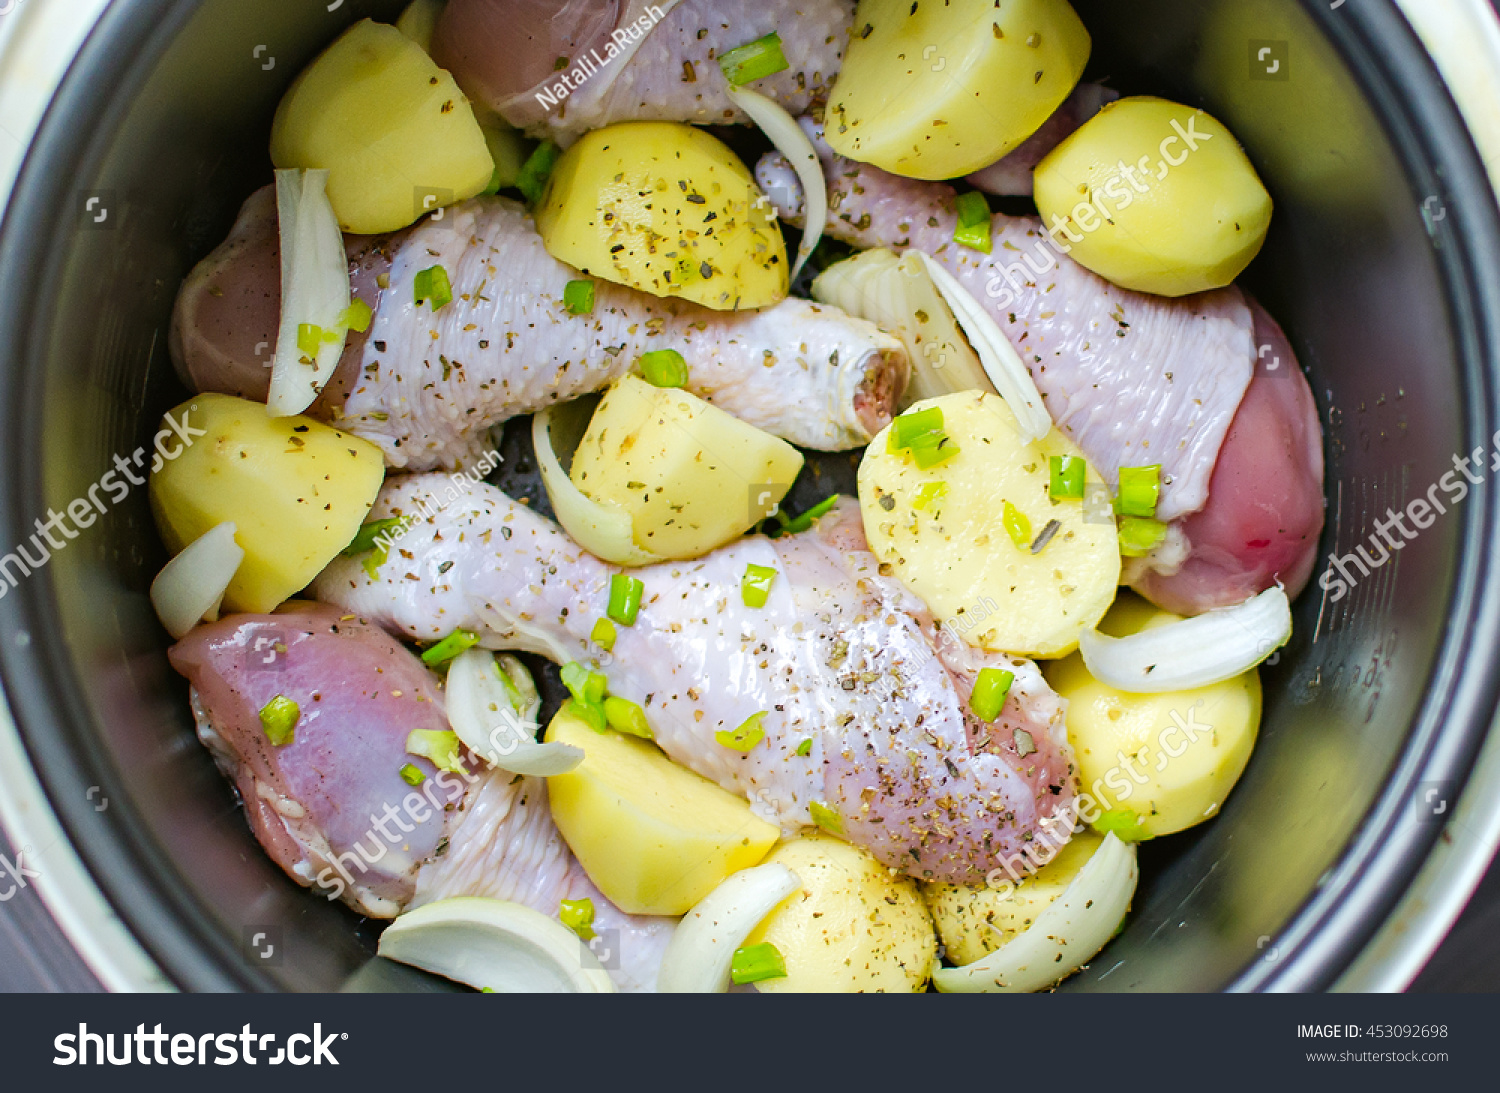 Картошка с курицей в мультиварке редмонд